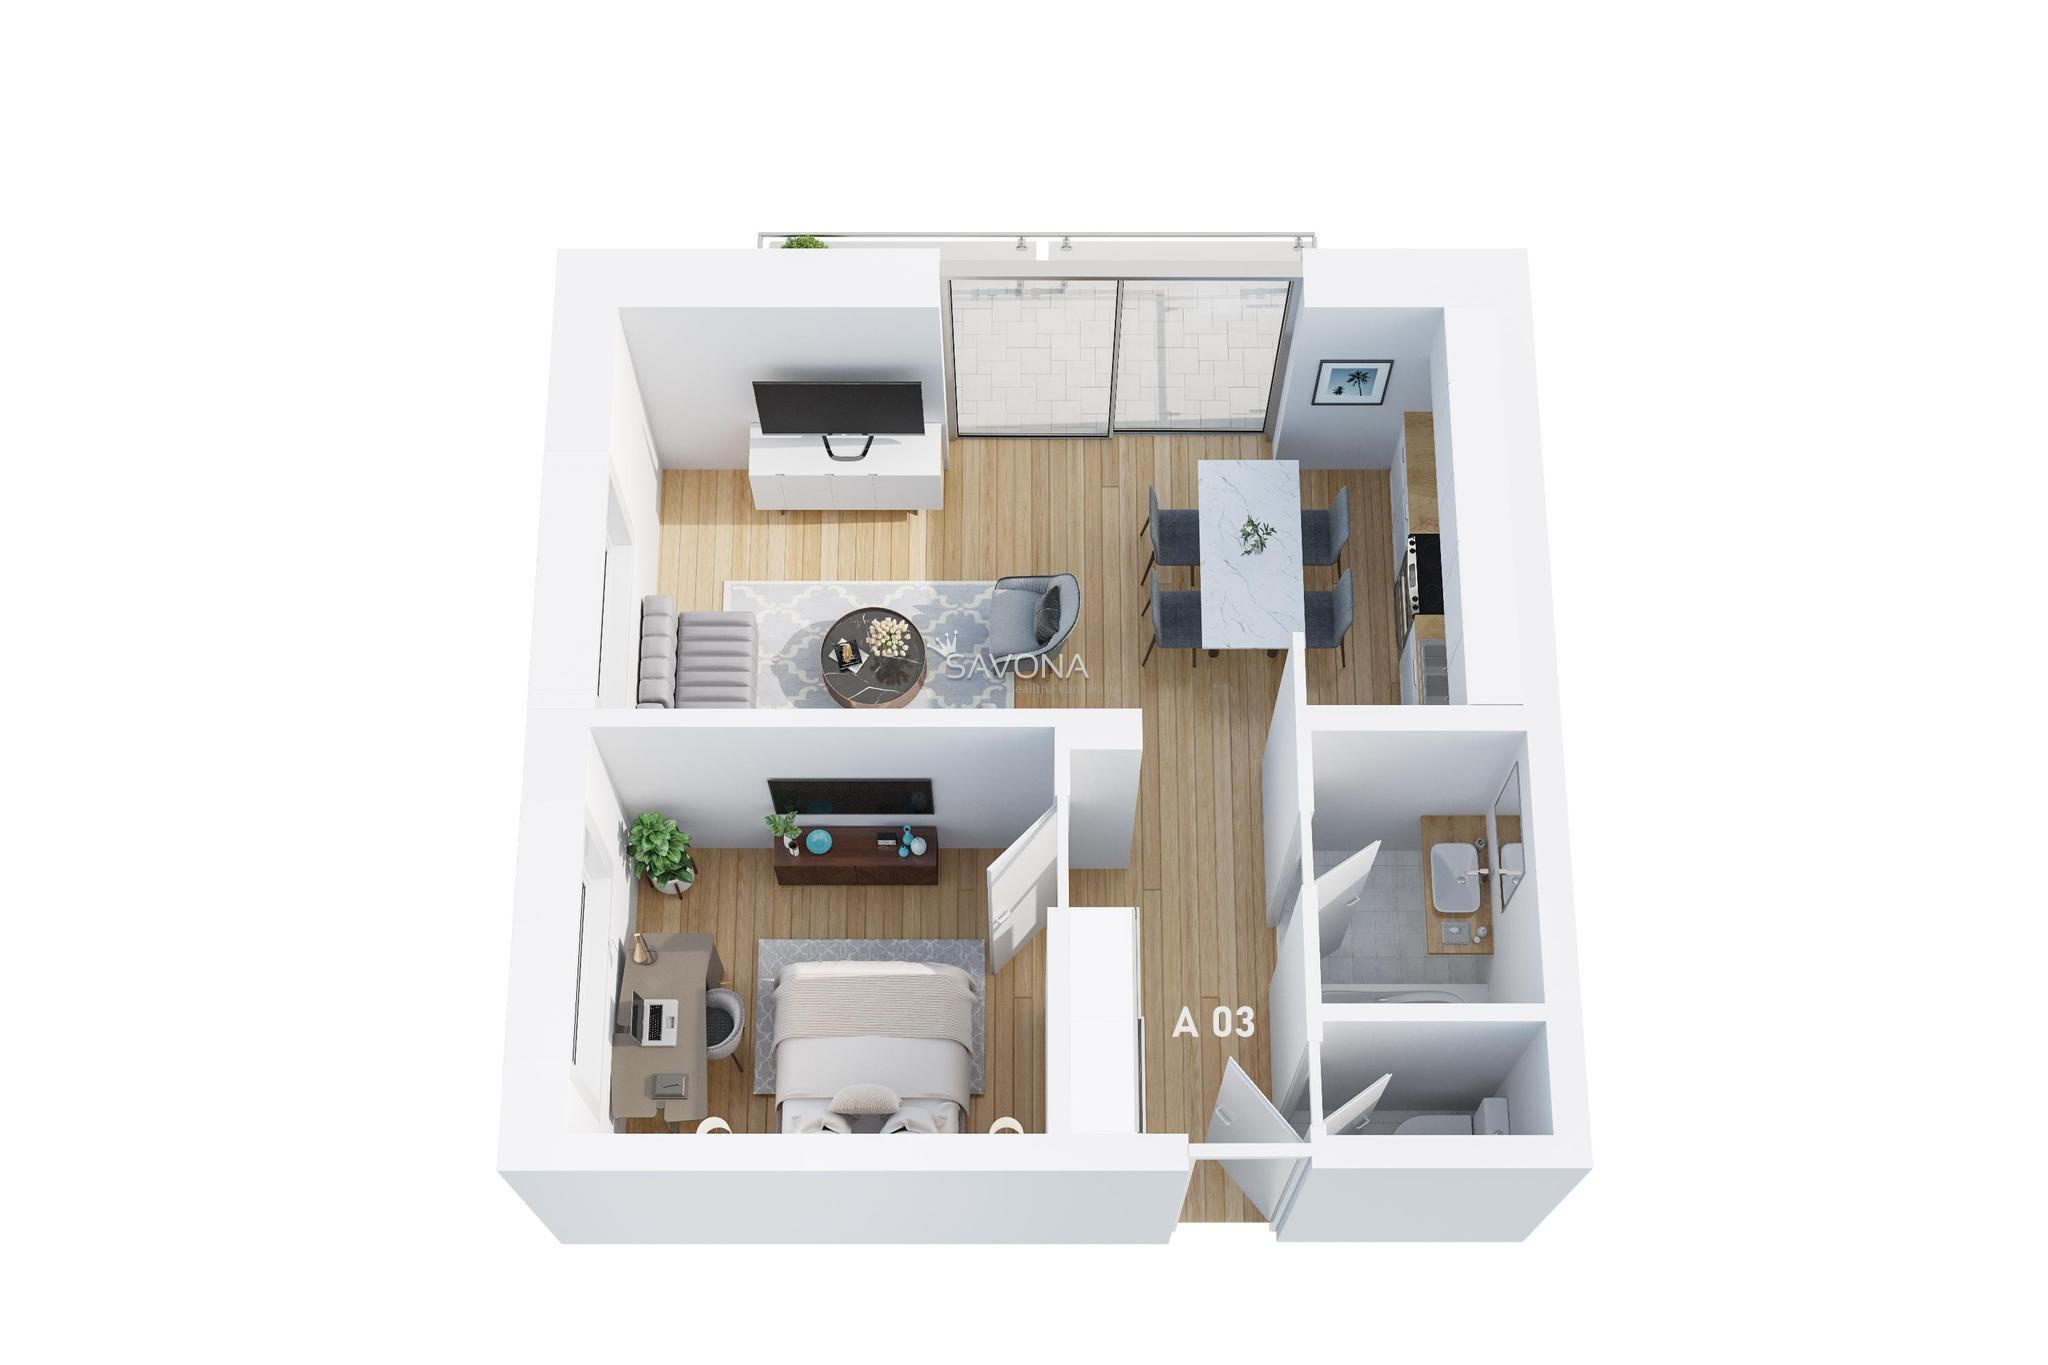 #napredaj 2 izbový byt | A 03 - 62 m2 – s výhľadom na TATRY